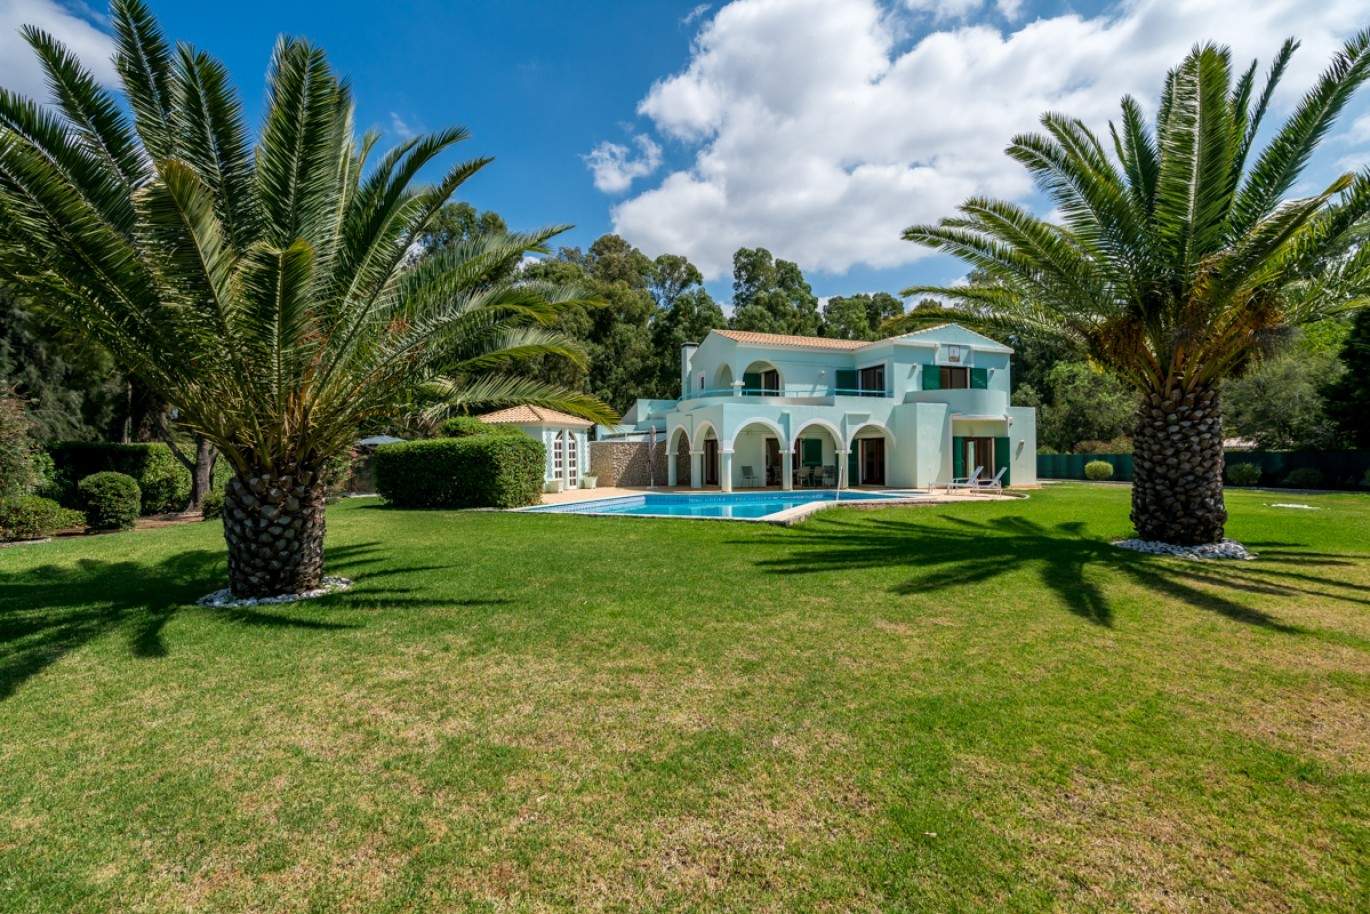 Verkauf Villa mit pool und Garten in Penina Alvor, Algarve, Portugal_83416